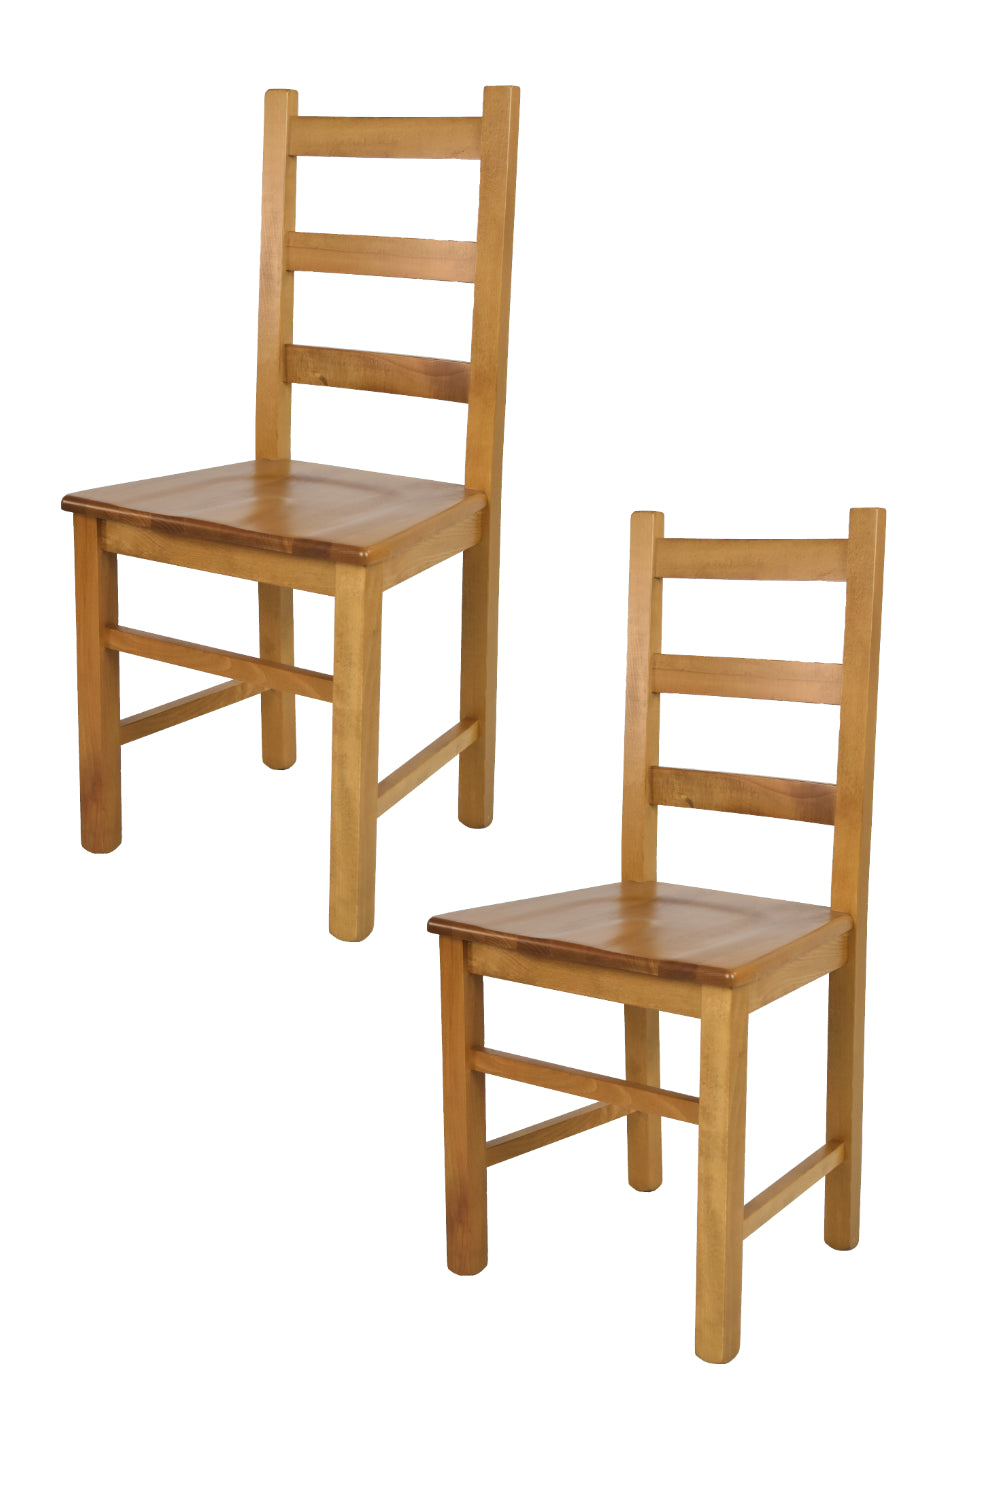 Tommychairs - Set 2 sillas de Cocina y Comedor  Rustica, Estructura en Madera de Haya Color Roble y Asiento en Madera